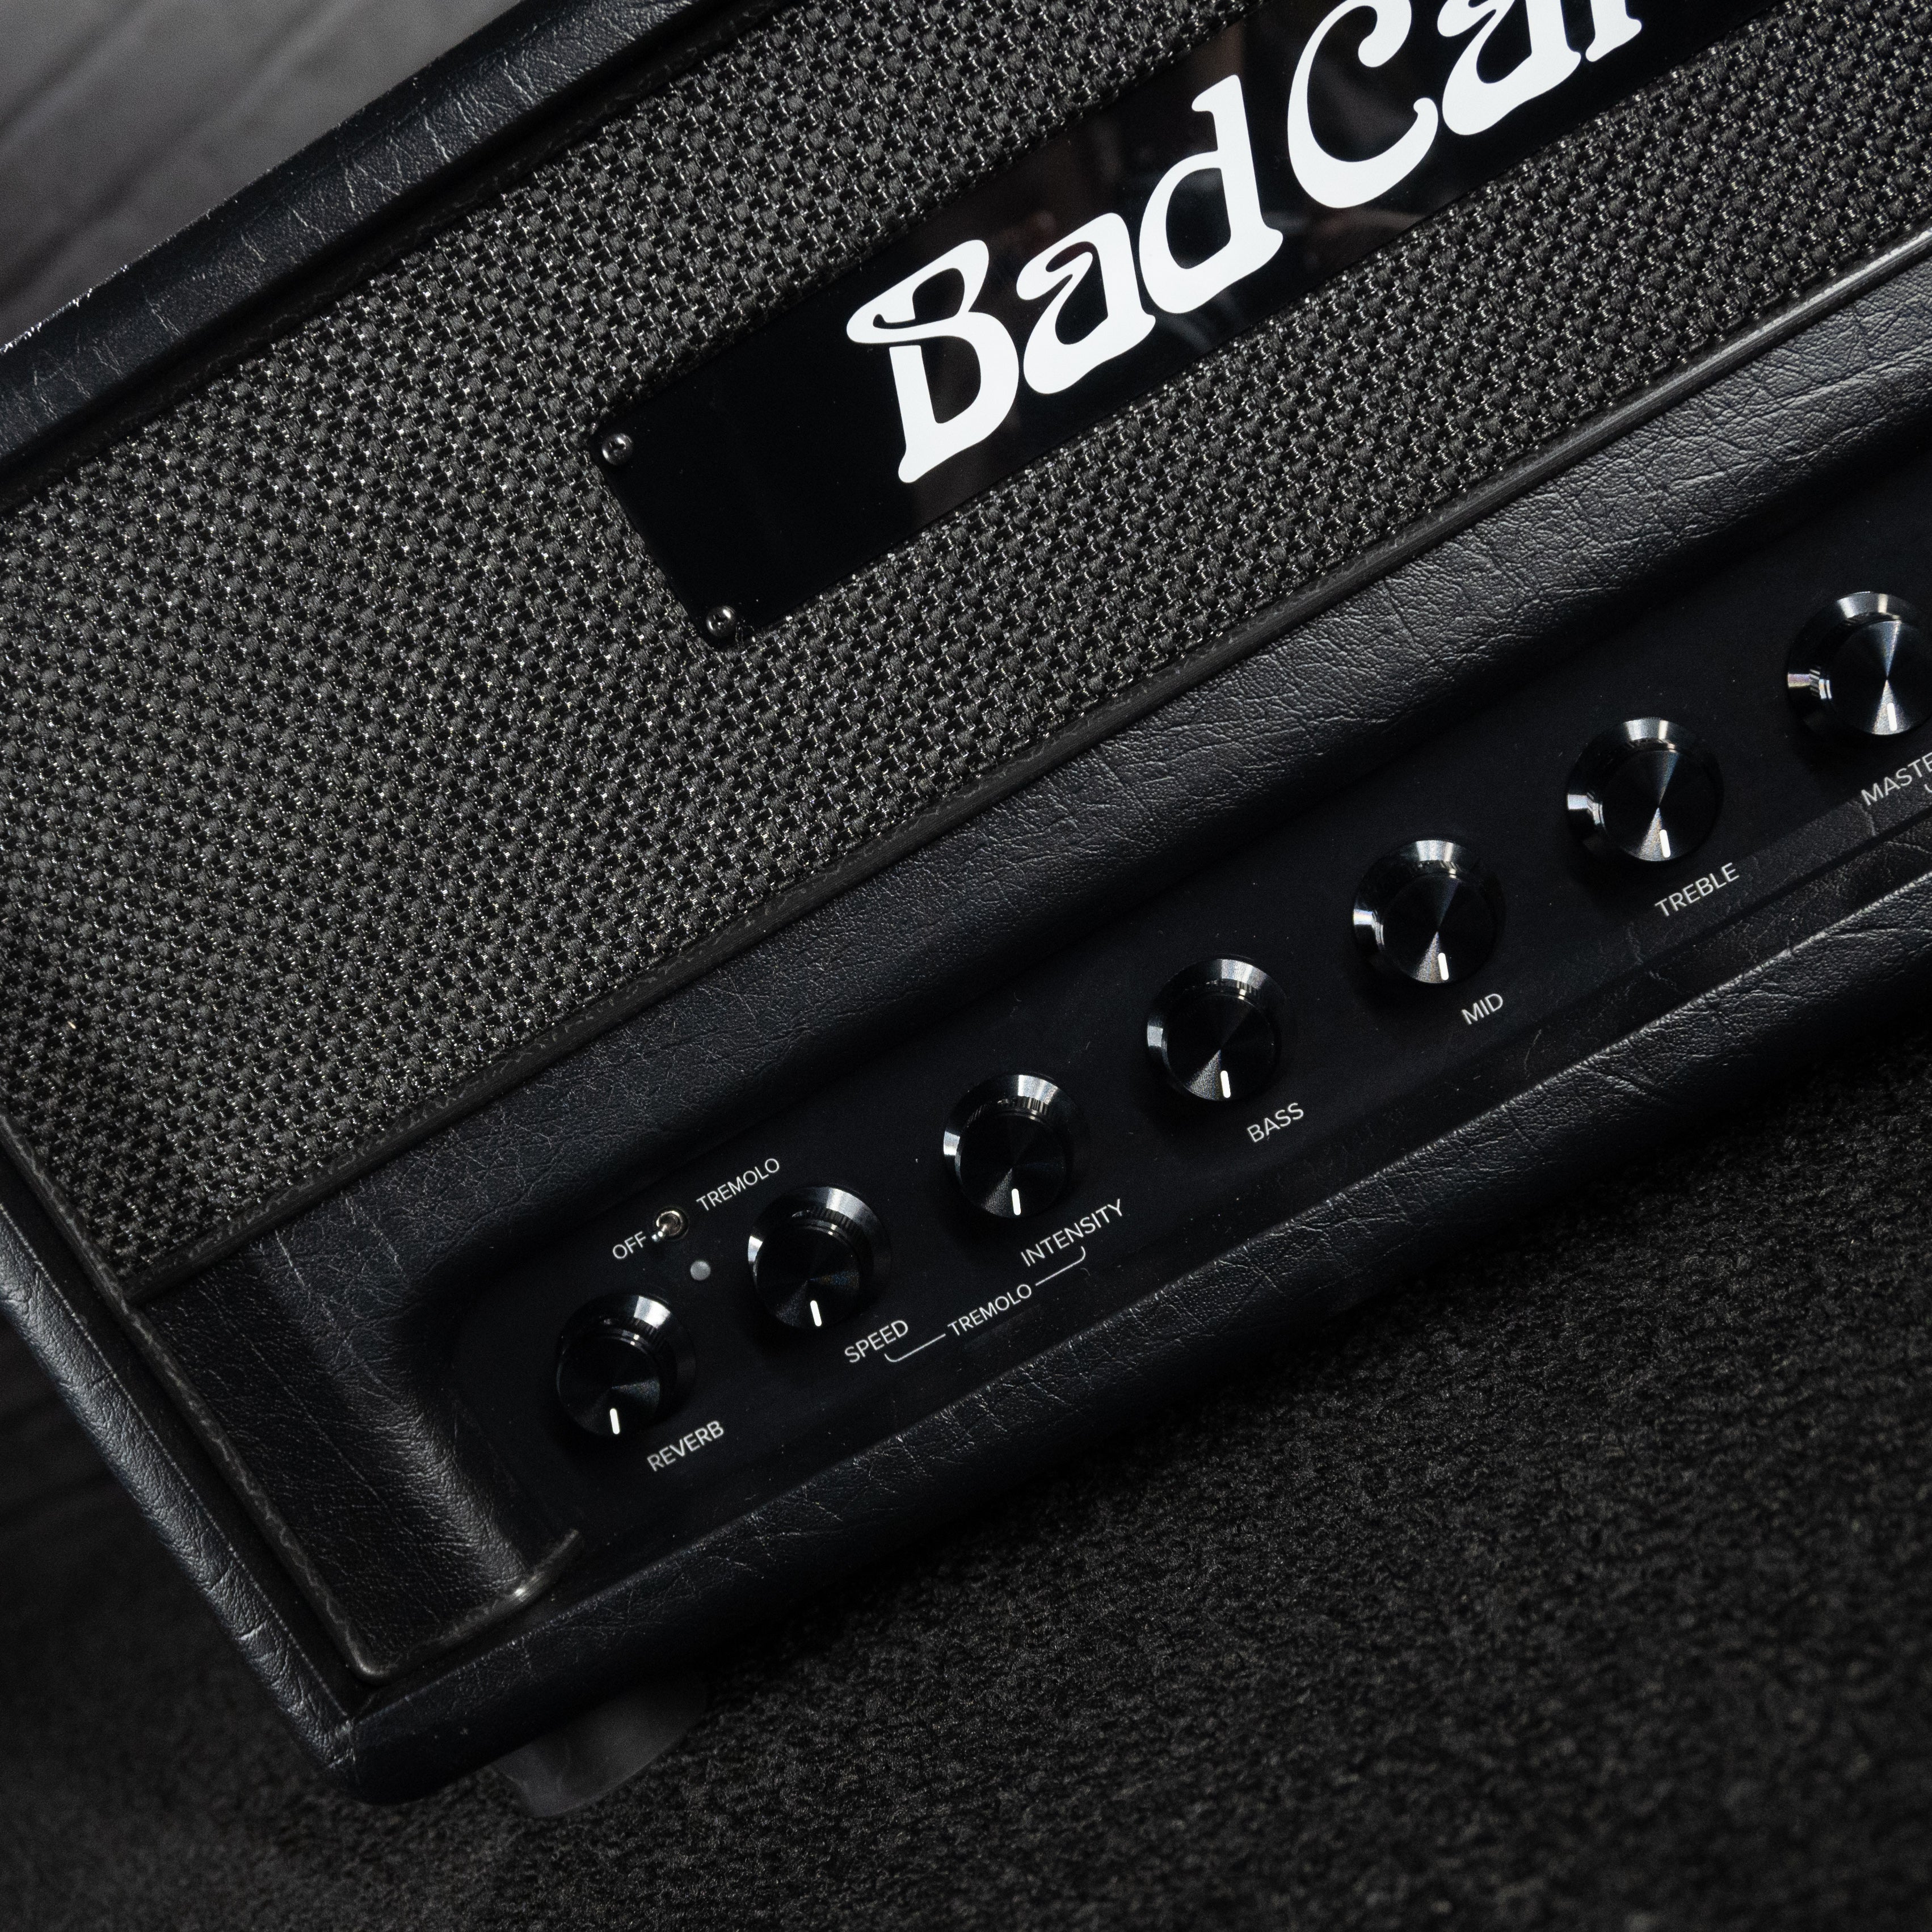 Bad Cat Jet Black 38w Amplifier